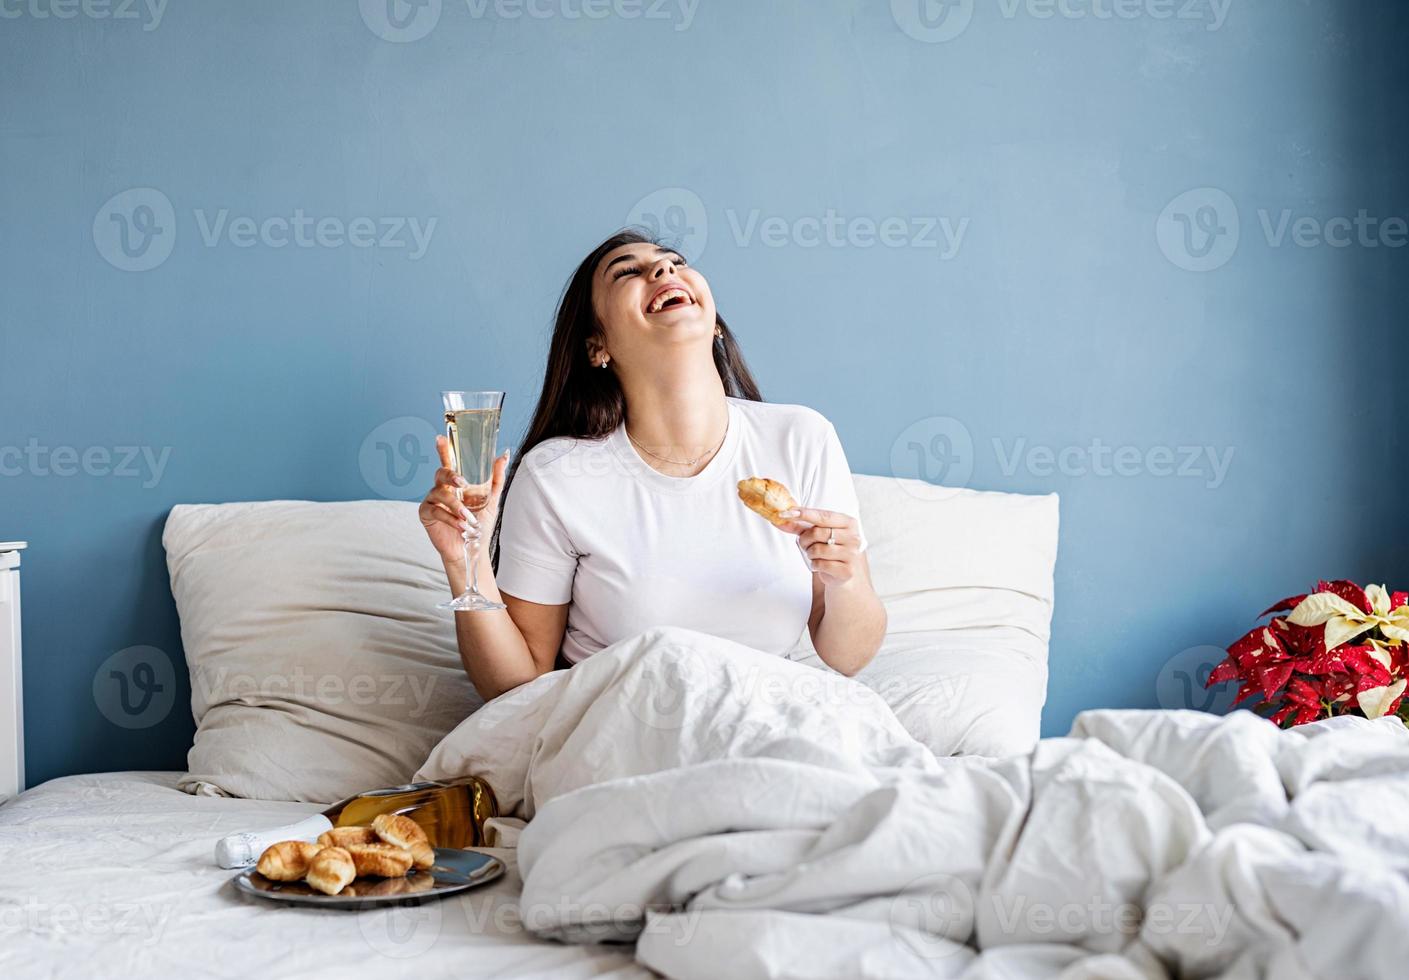 giovane donna bruna seduta sveglia nel letto con palloncini e decorazioni a forma di cuore rosso bevendo champagne mangiando croissant foto